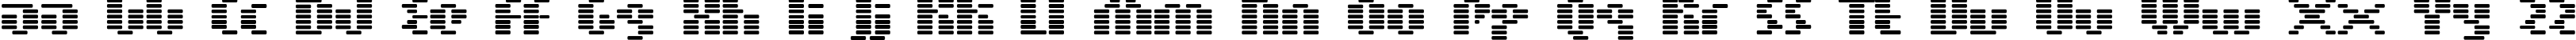 Пример написания английского алфавита шрифтом BN Moog Boy